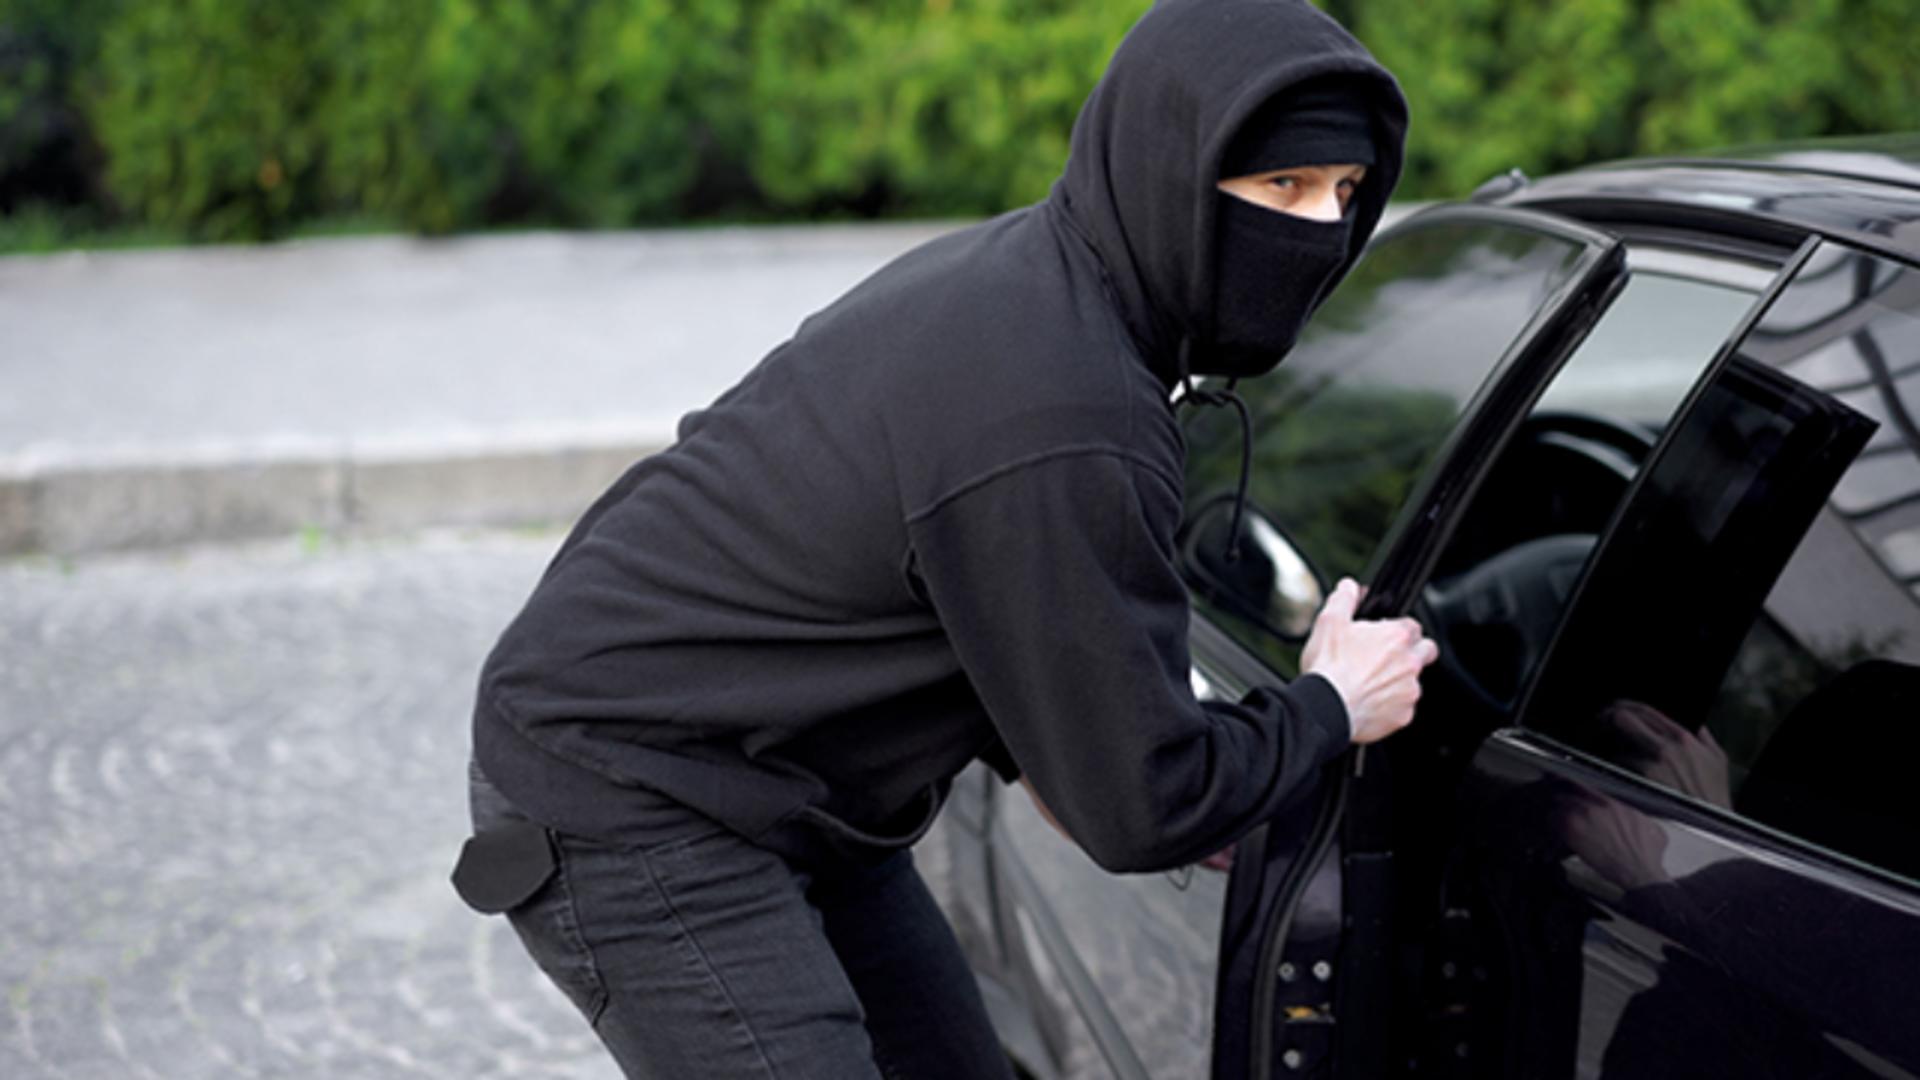 Noua metodă a hoților de a fura din mașini: Copiază semnalul de la închiderea centralizată